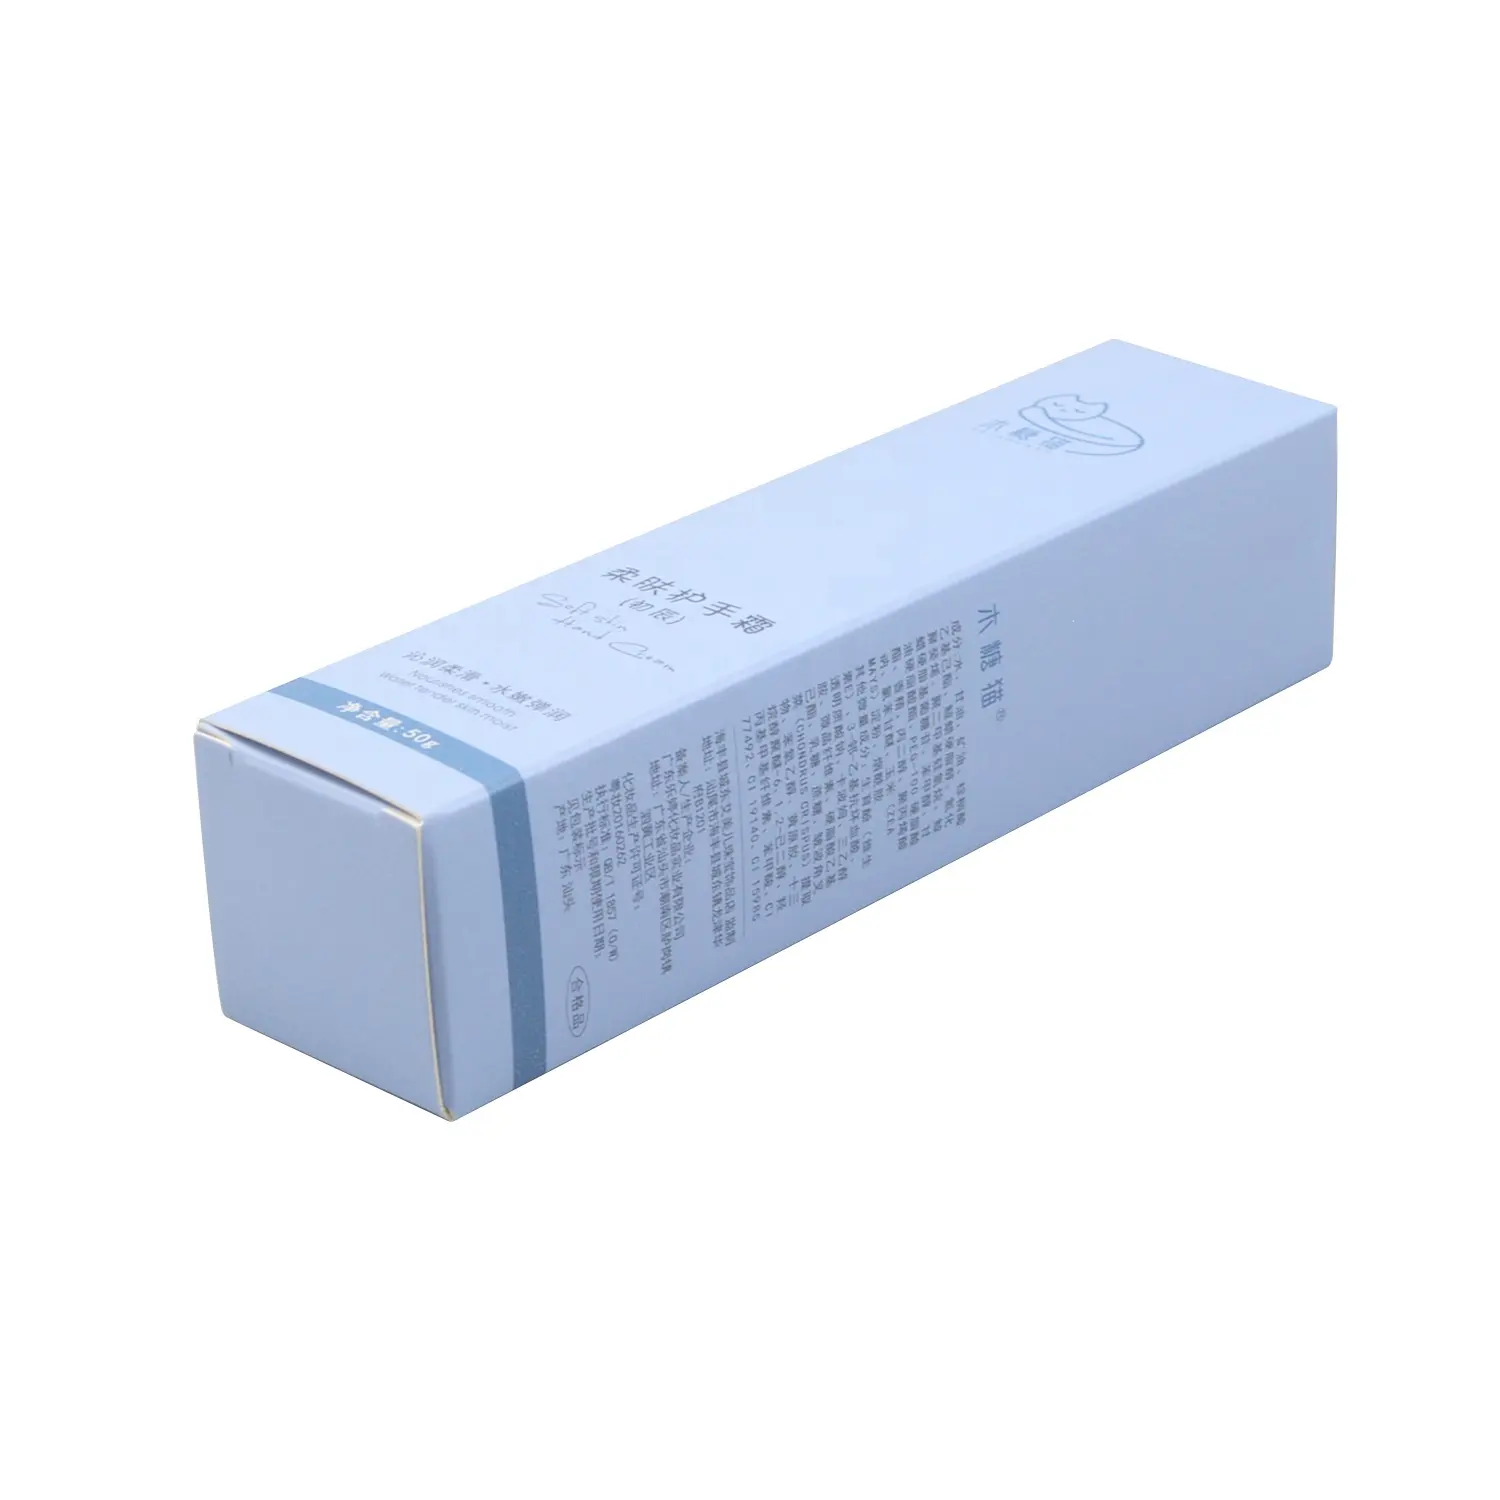 Biyobozunur için lüks ürün kutusu kabartmalı Logo baskılı kağıt kozmetik ambalaj kutusu